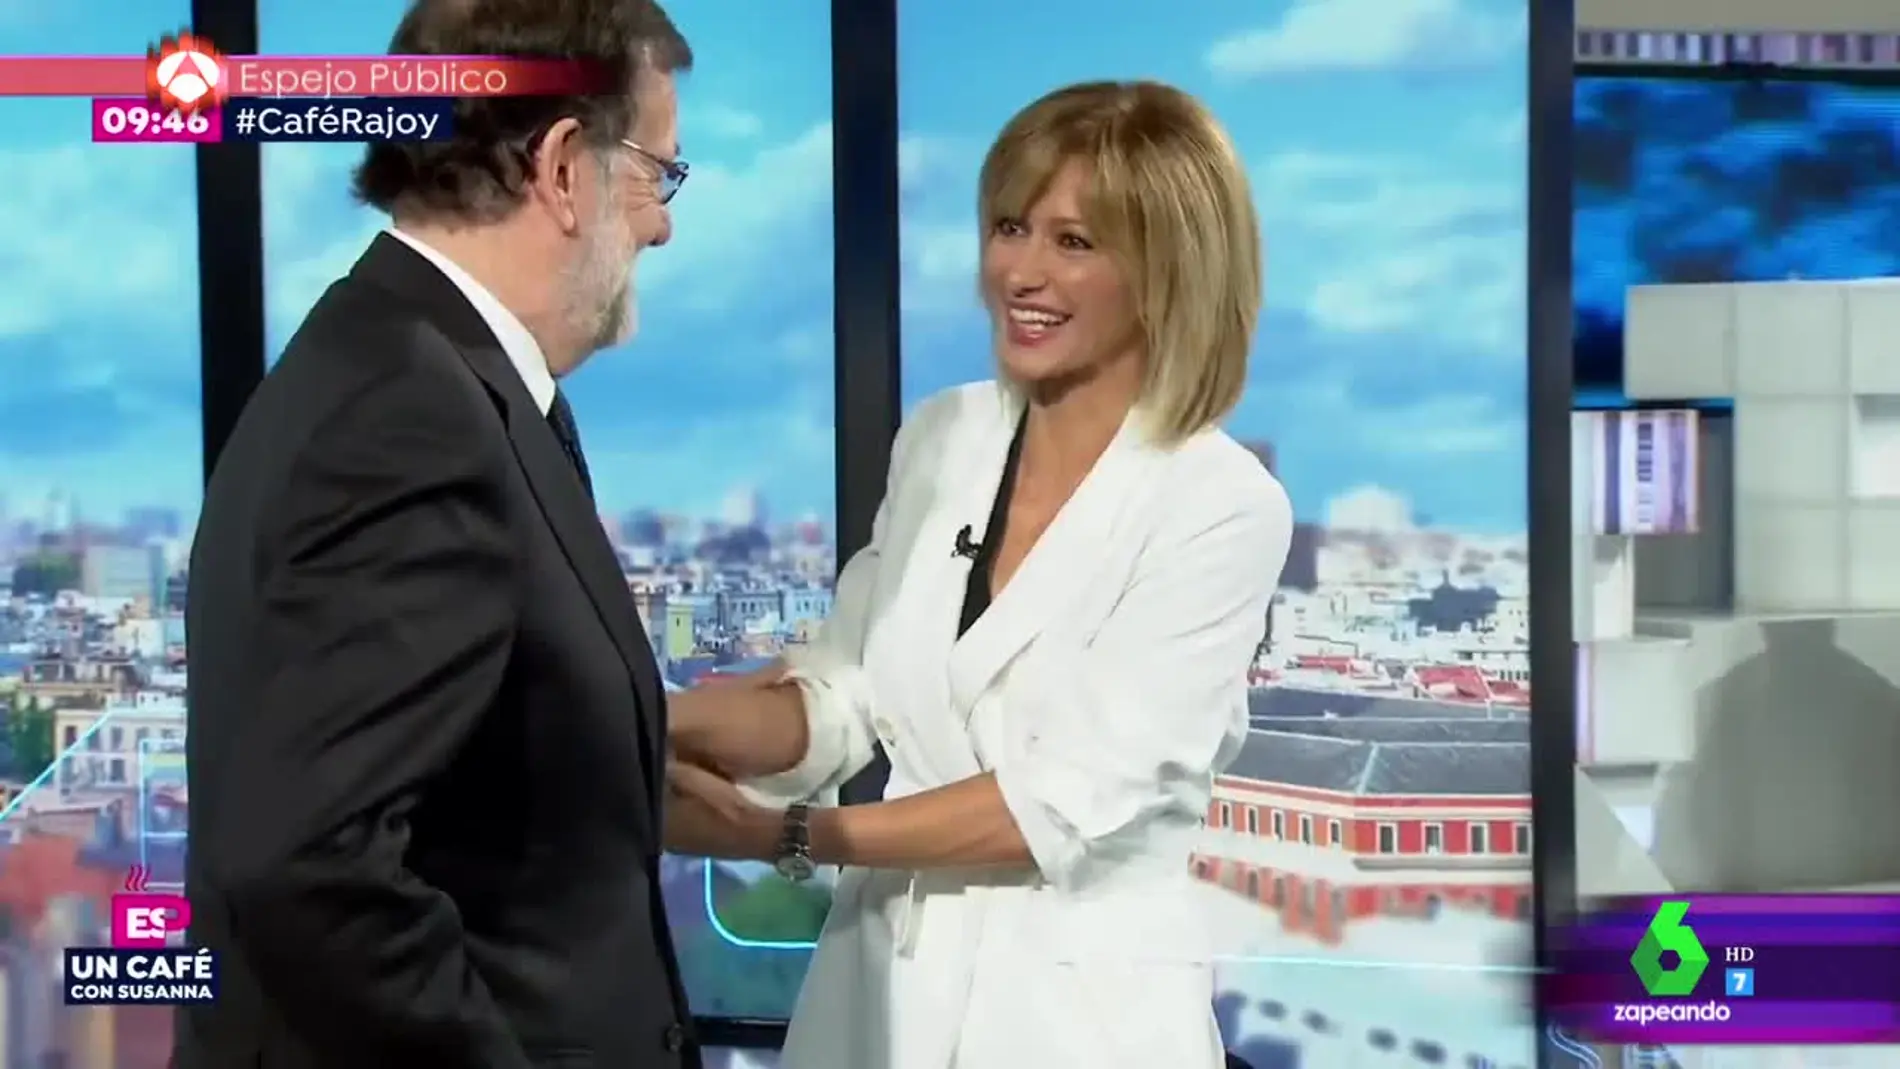 La reacción de Susanna Griso a la inesperada felicitación de Mariano Rajoy por su reciente maternidad